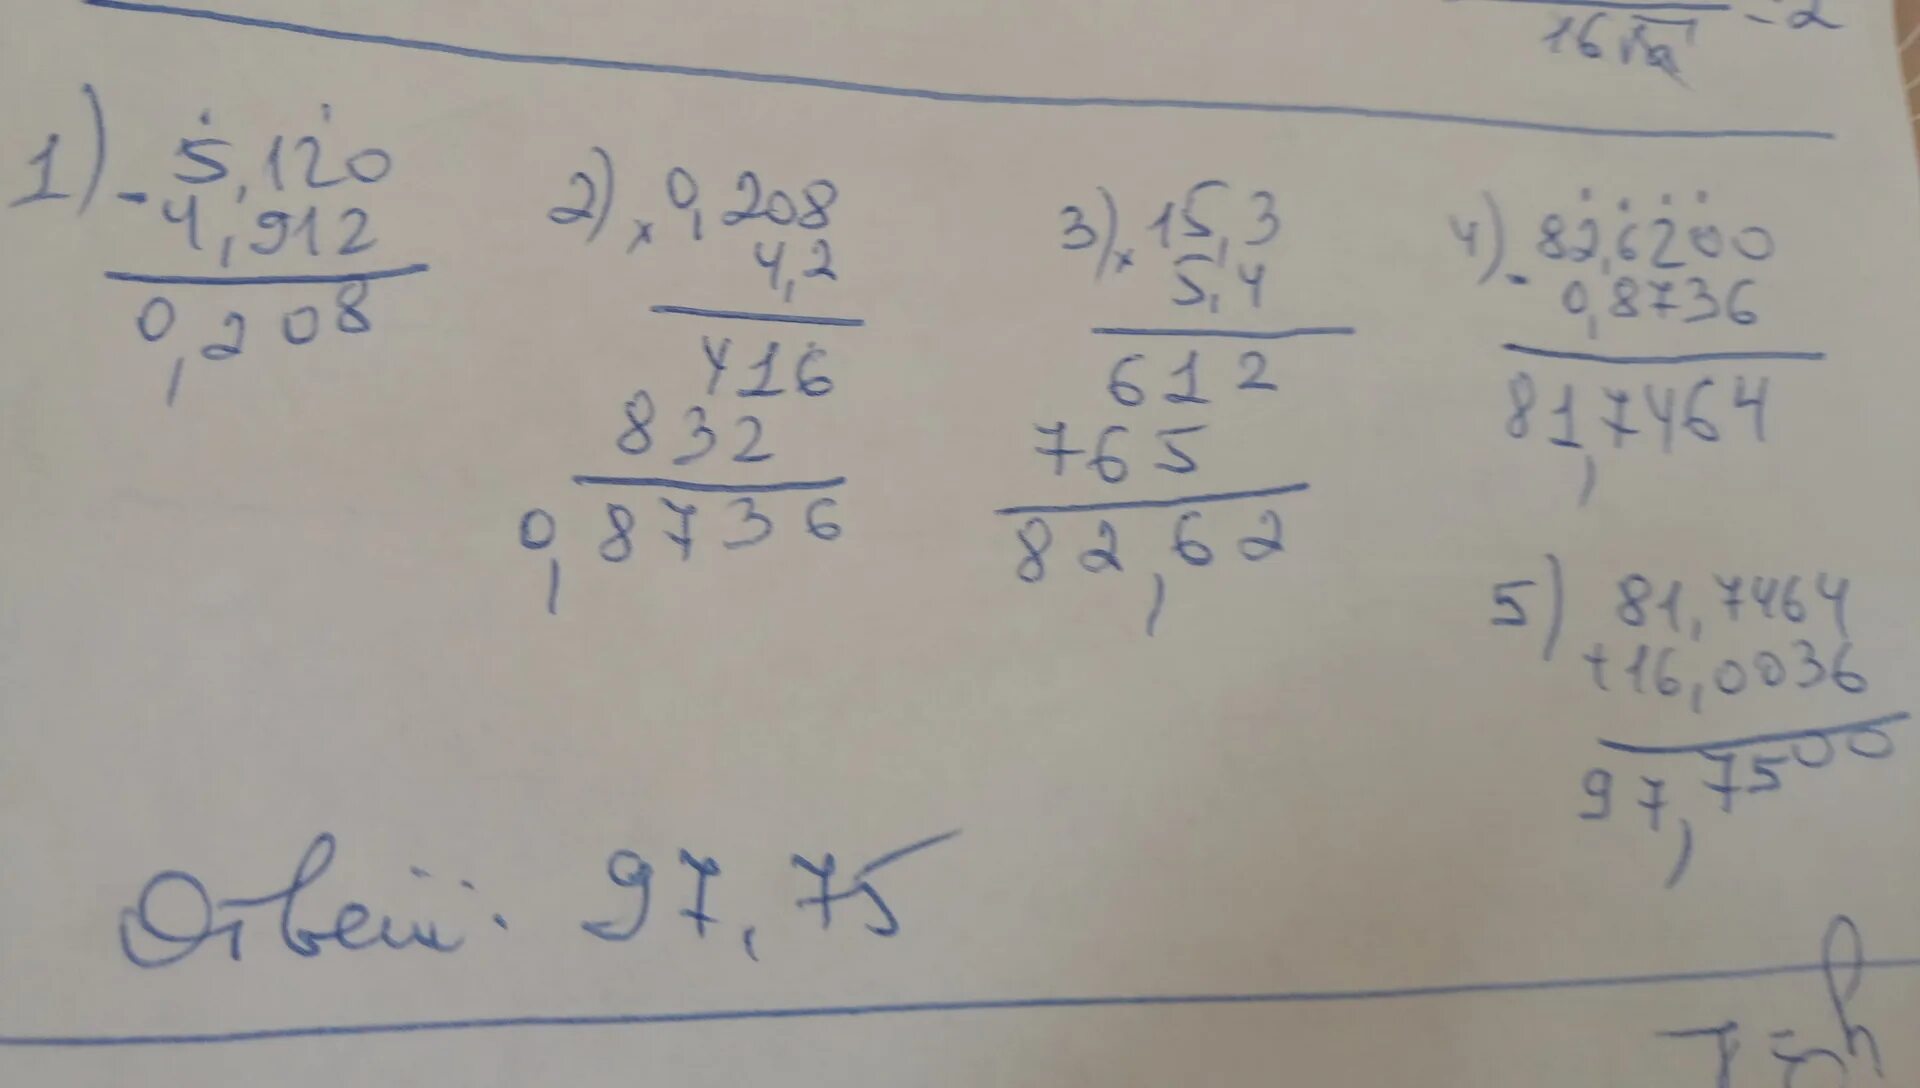 11 15 3 5 решение. 15 3 5 4-4 2 5 12-4 912 16 0036. 15,3*5,4-4,2*(5,12-4,912)+16,0036 В столбик. 15 3 5 4-4 2 5 12-4 912 16 0036 В столбик решение. 15,3×5, 4-4, 2×(5, 12-3, 912) +16, 0036 В столбик.